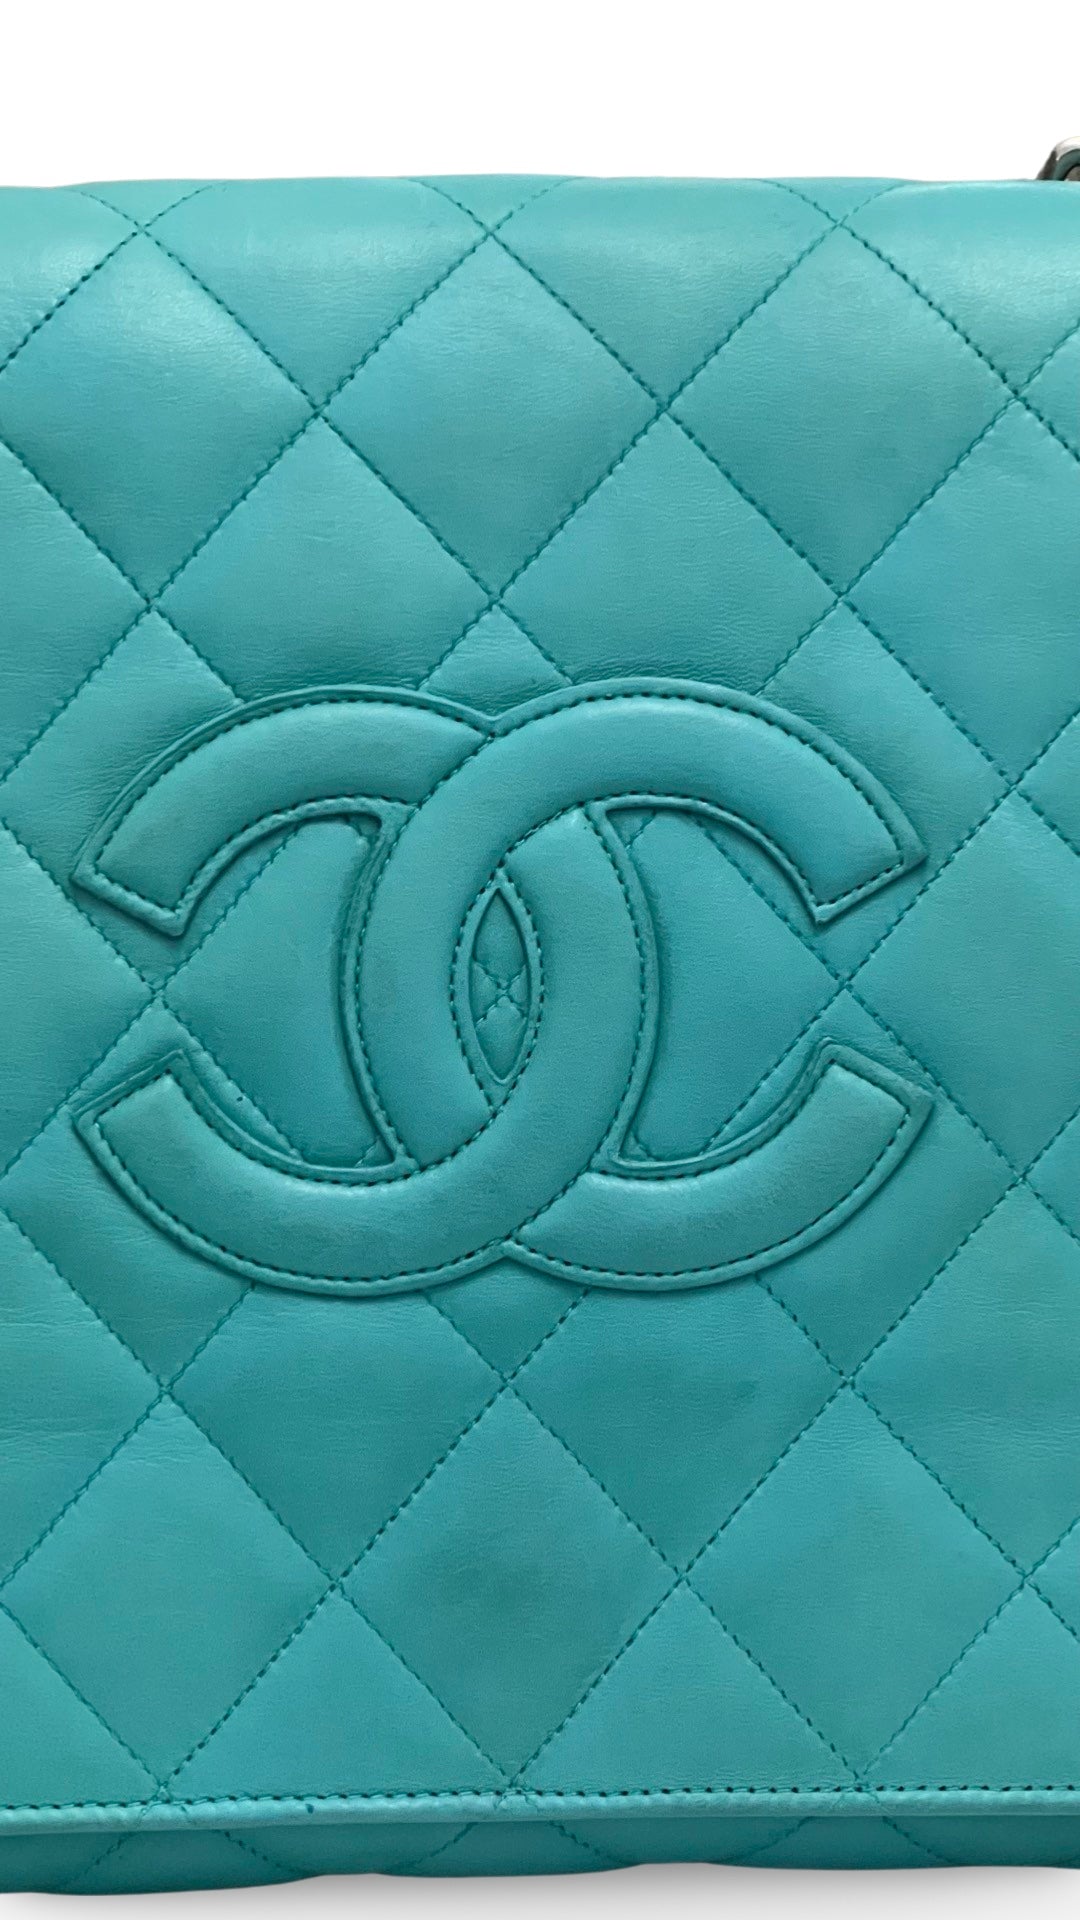 Chanel Vintage Handbag